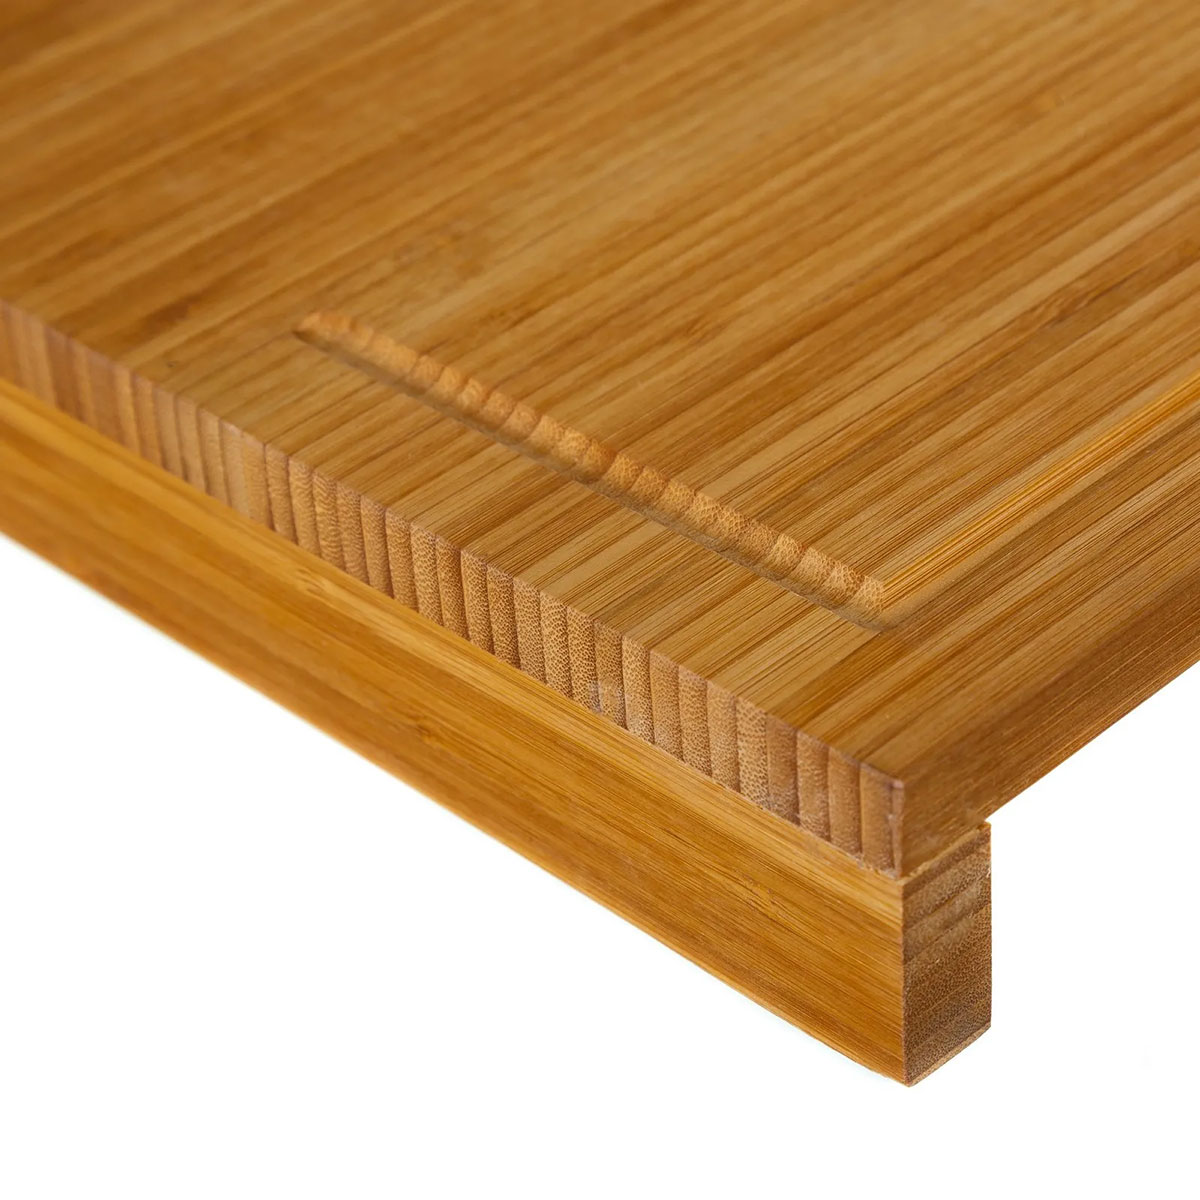 Large Bamboo Cutting Board with Edge